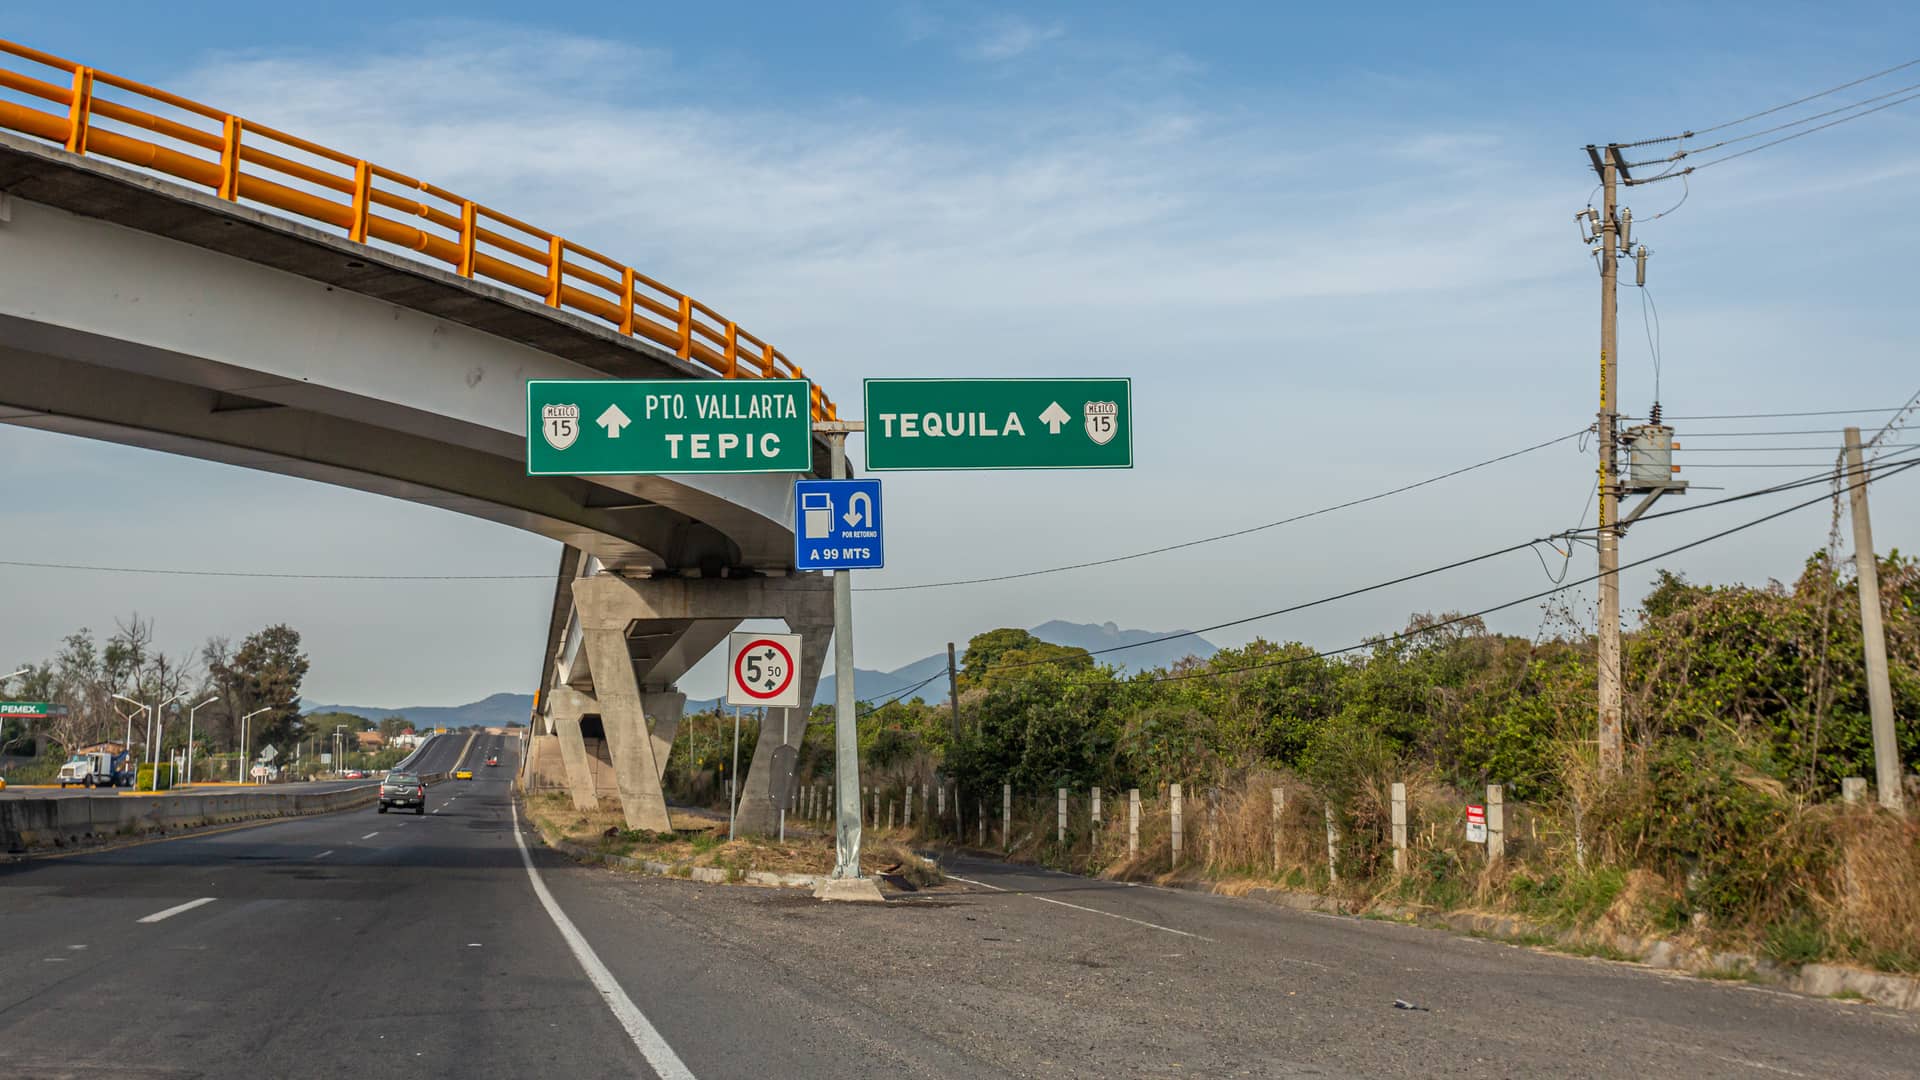 señales de una carretera que indican la direccion a tepic que es una localidad donde hay sucursales de megacable